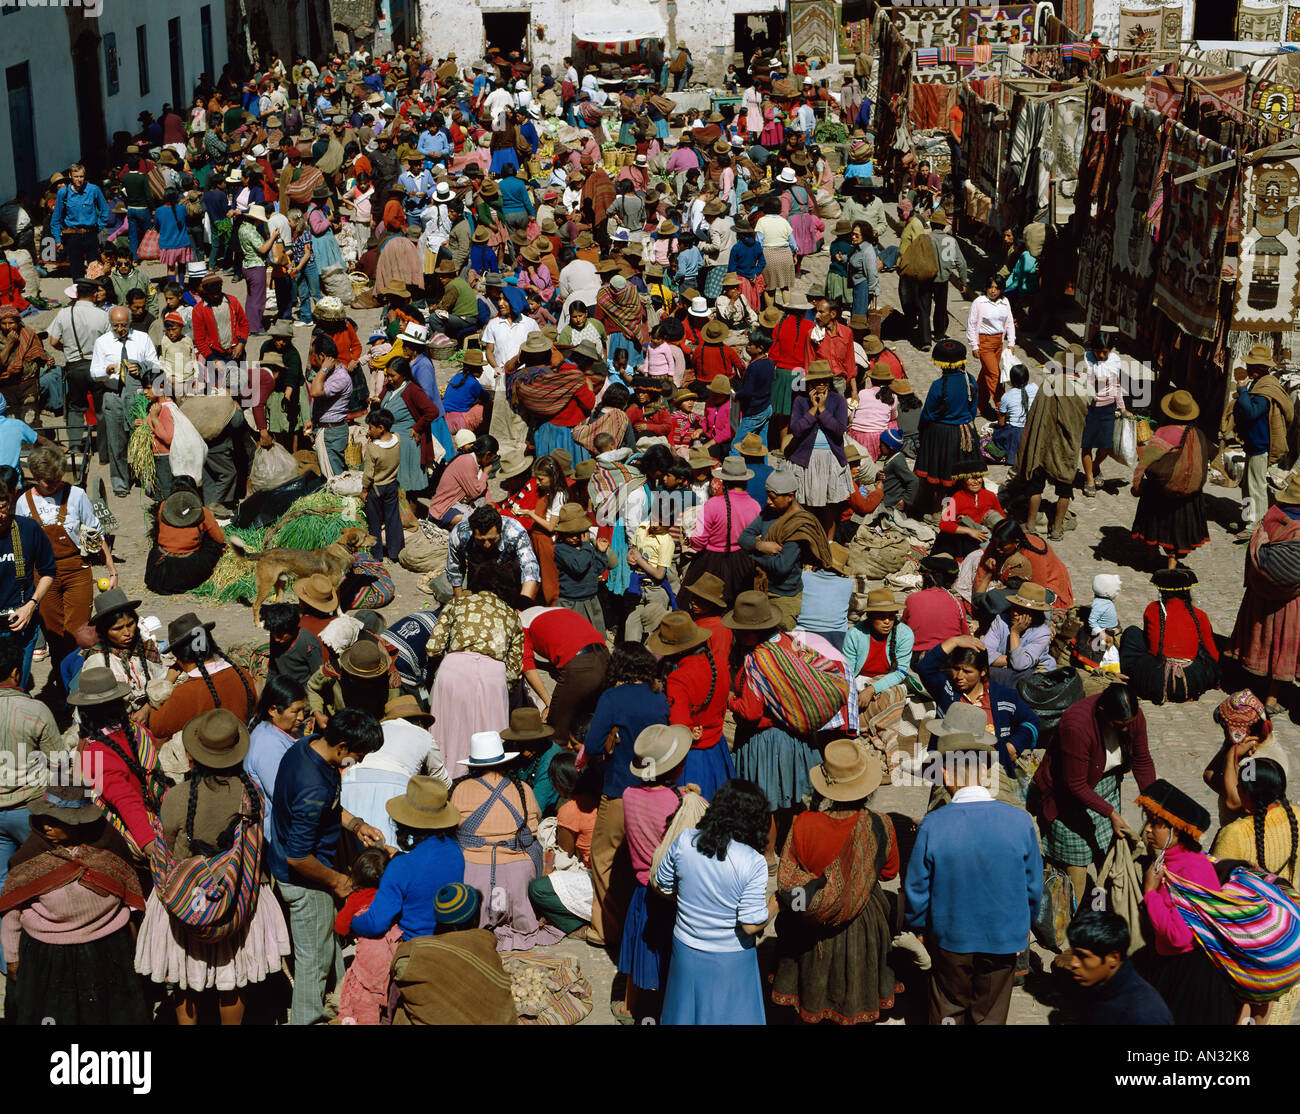 Pisac Market, Pisac, Peru Stock Photo